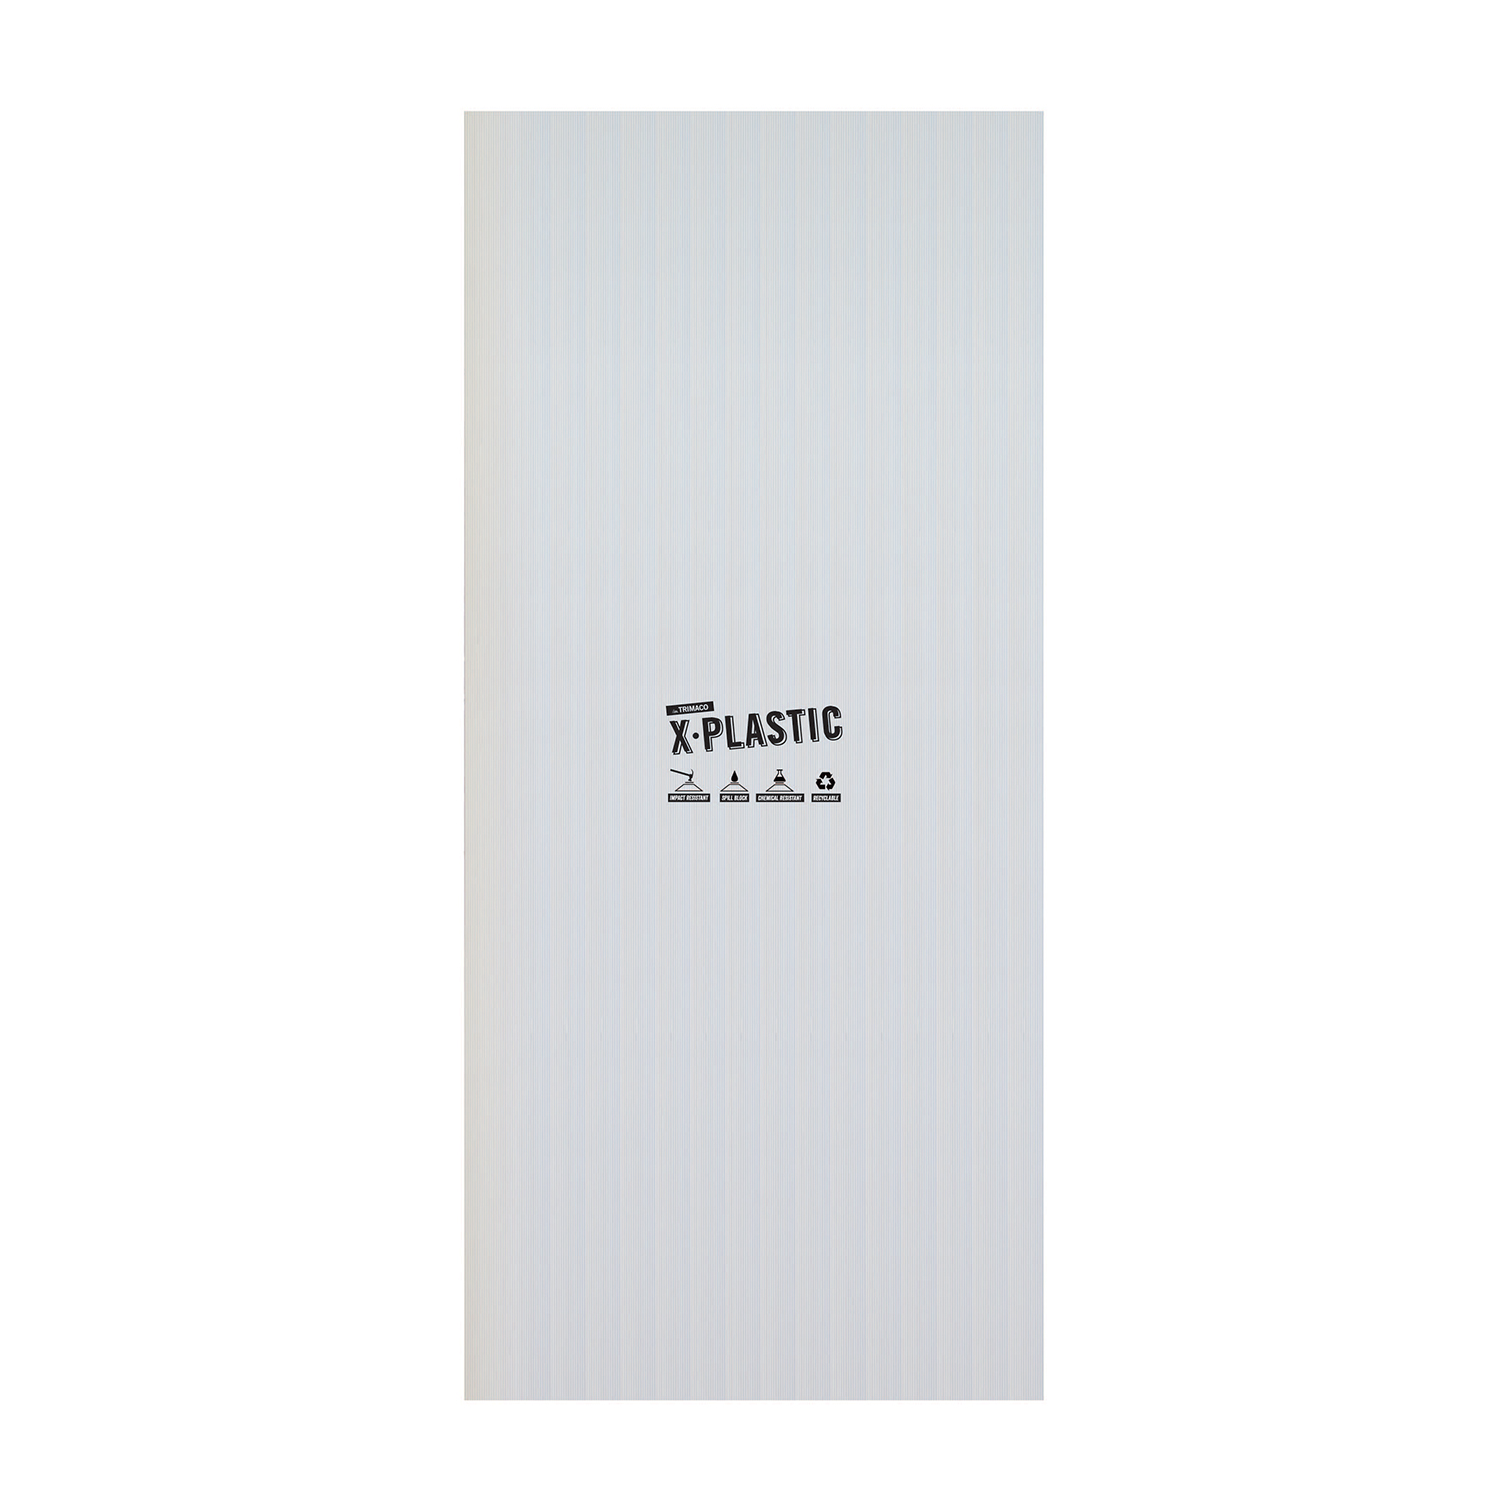 Trimaco-Trimaco X-Plastic zaštita površina 4mm 1.22m x 2.44m